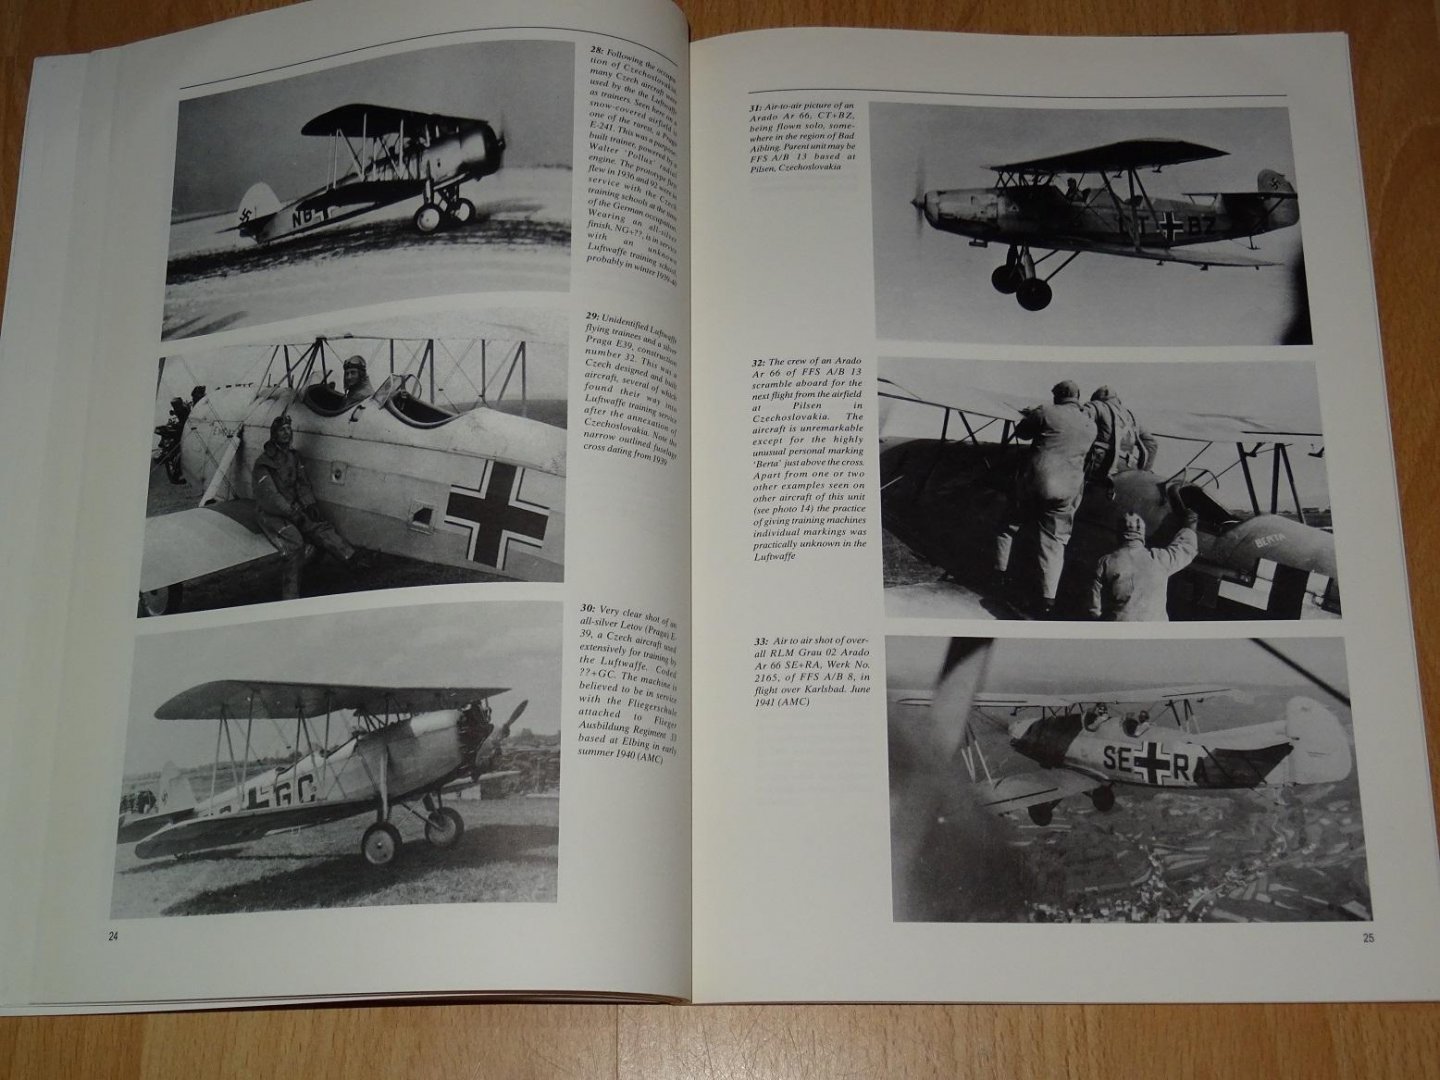 Ketley, Barry & Rolfe, Mark - Luftwaffe Fledglings 1935 - 145  Luftwaffe Training Units & their Aircraft